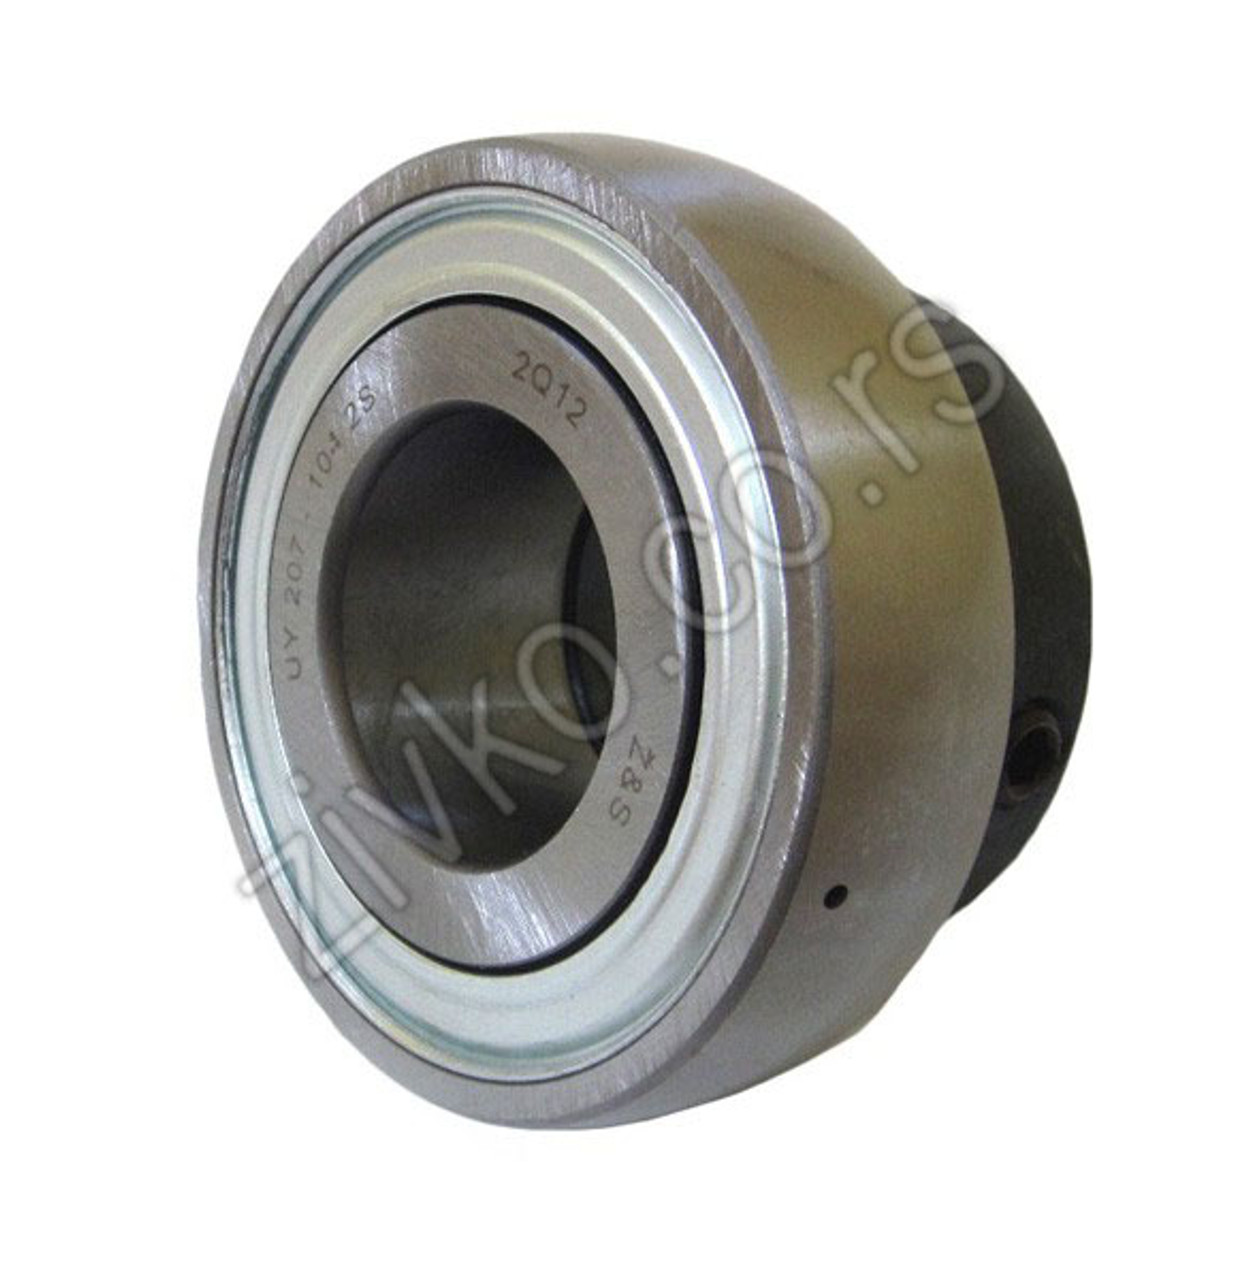 Insert ball bearing UY 207-104 2S - 1